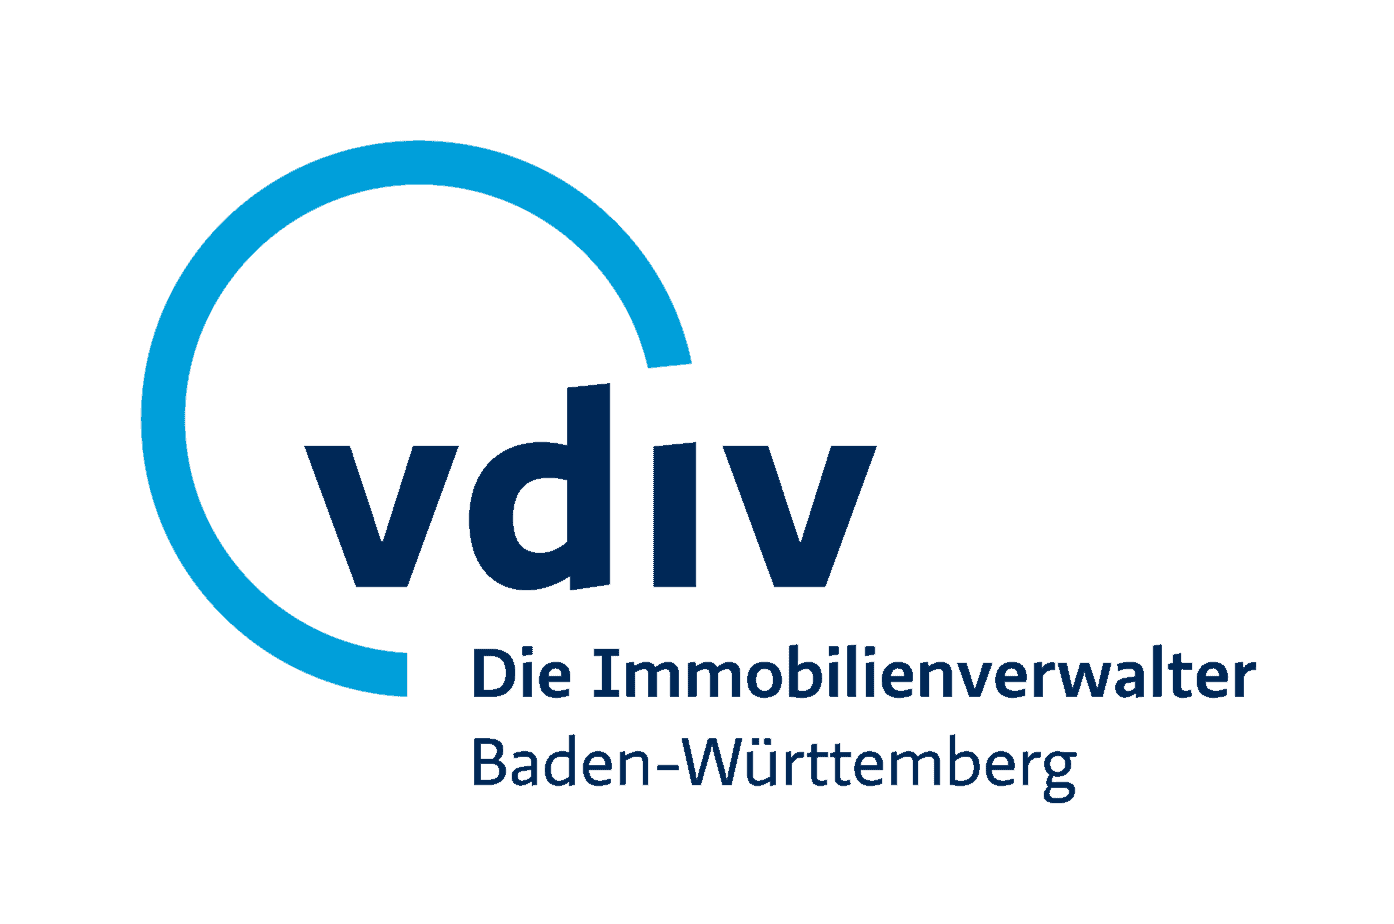 Verband der Immobilienverwalter Baden-Württemberg e.V.